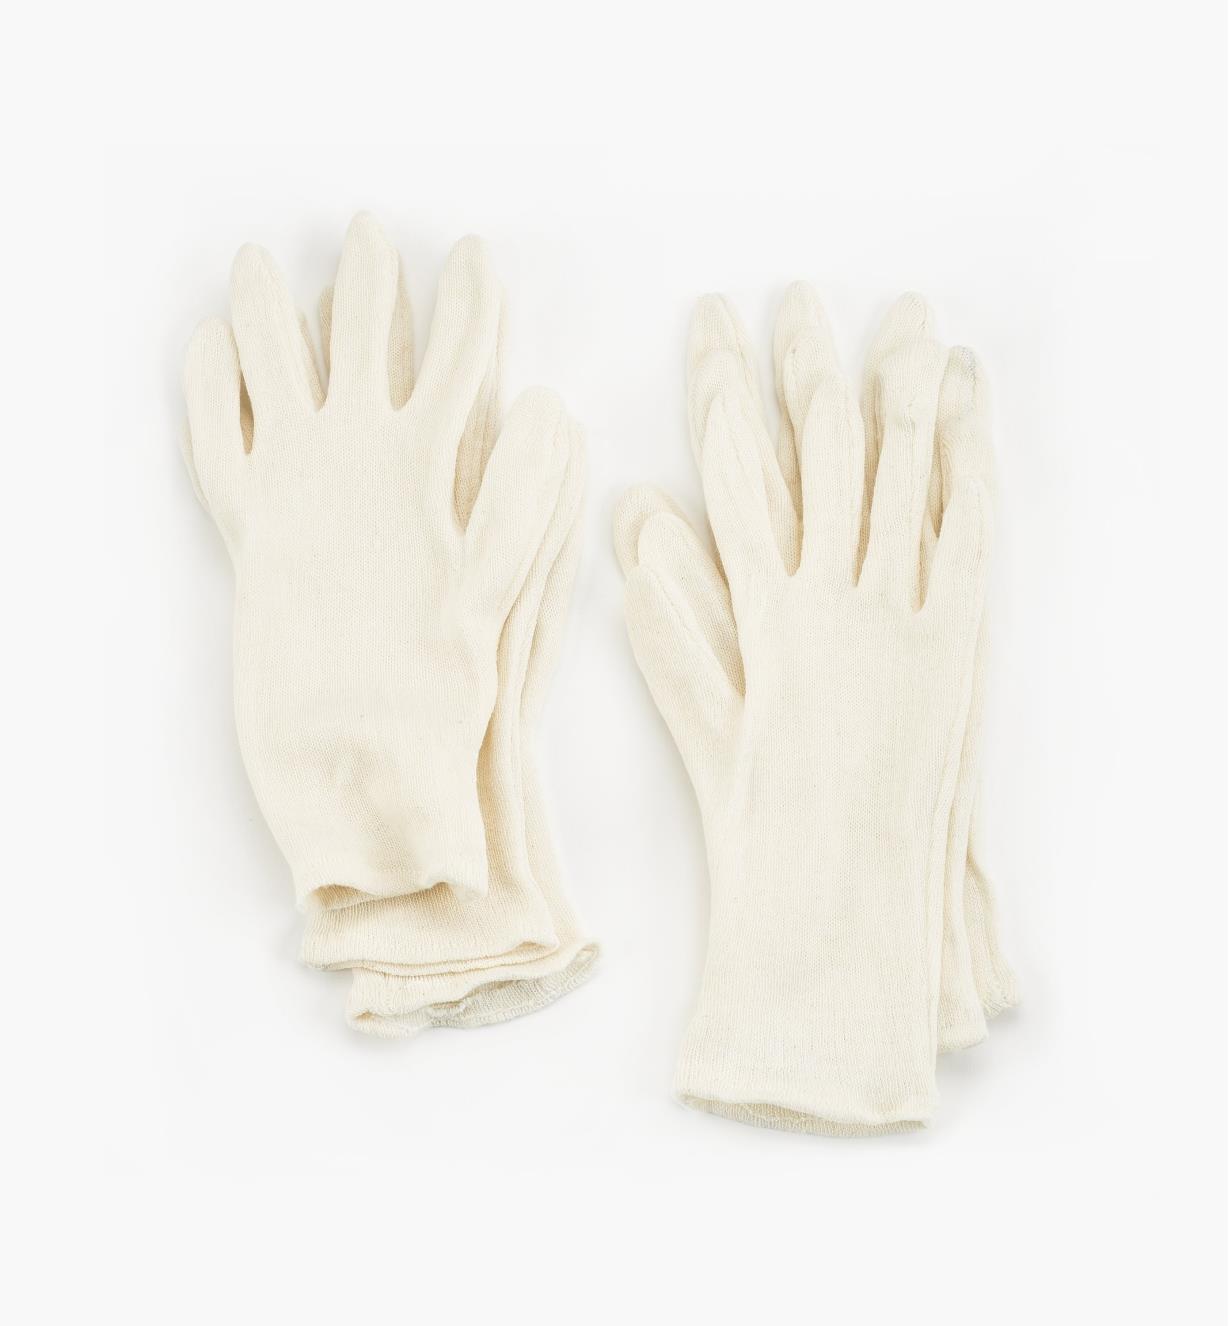 67K9102 - Men's Glove Liners, 3 pr.